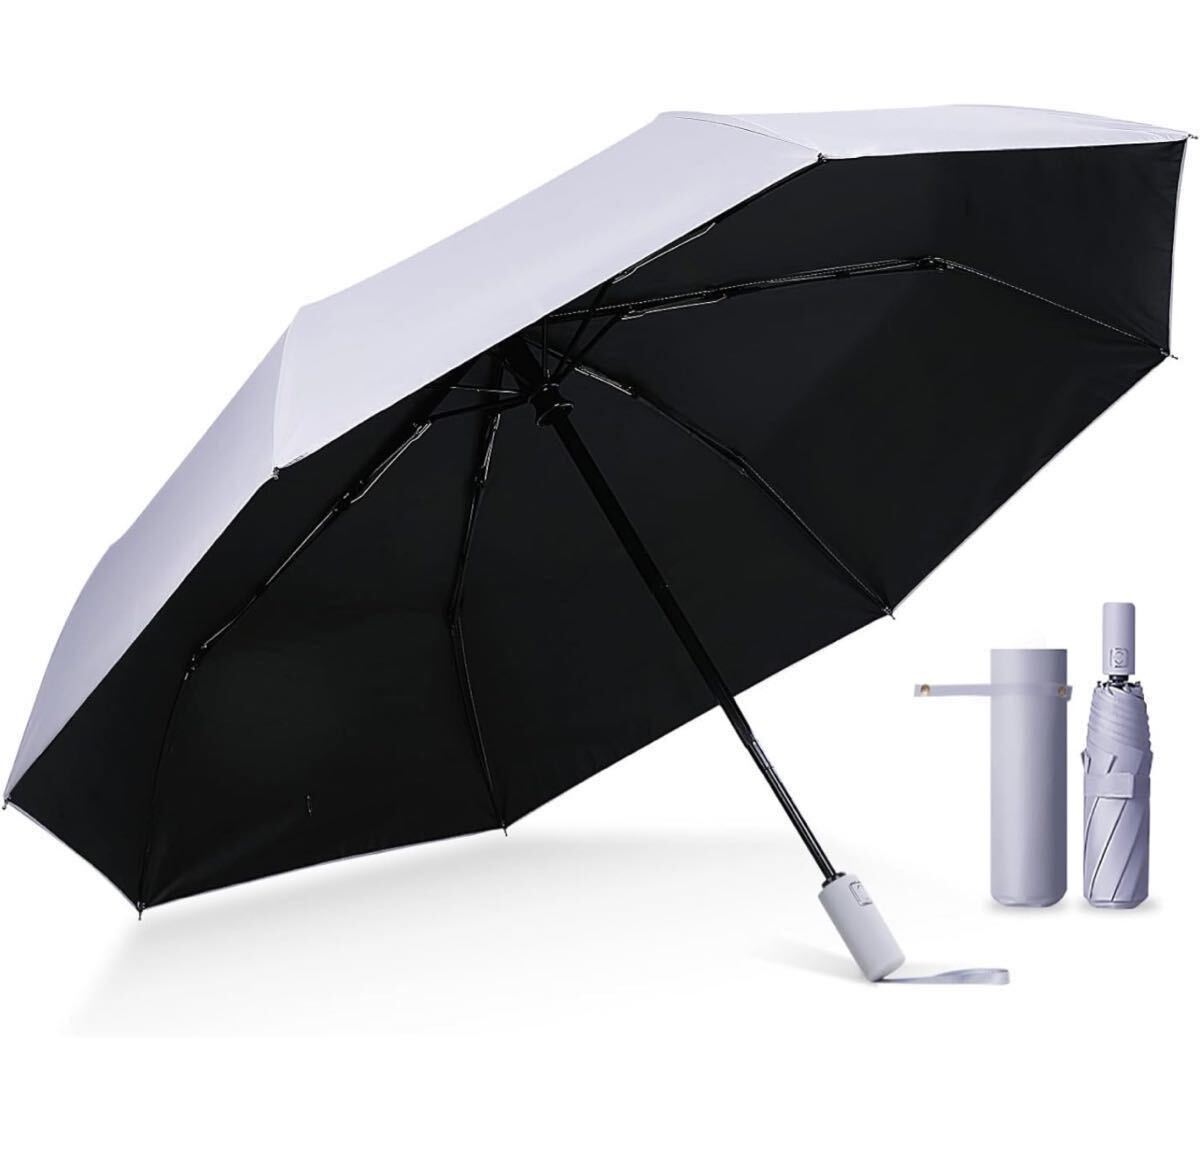 AB-4☆ 国内機関UVカット率100%折りたたみ傘 完全遮光 晴雨兼用 男女兼用 ワンタッチ自動開閉 ザクラシックトーキョーの画像1